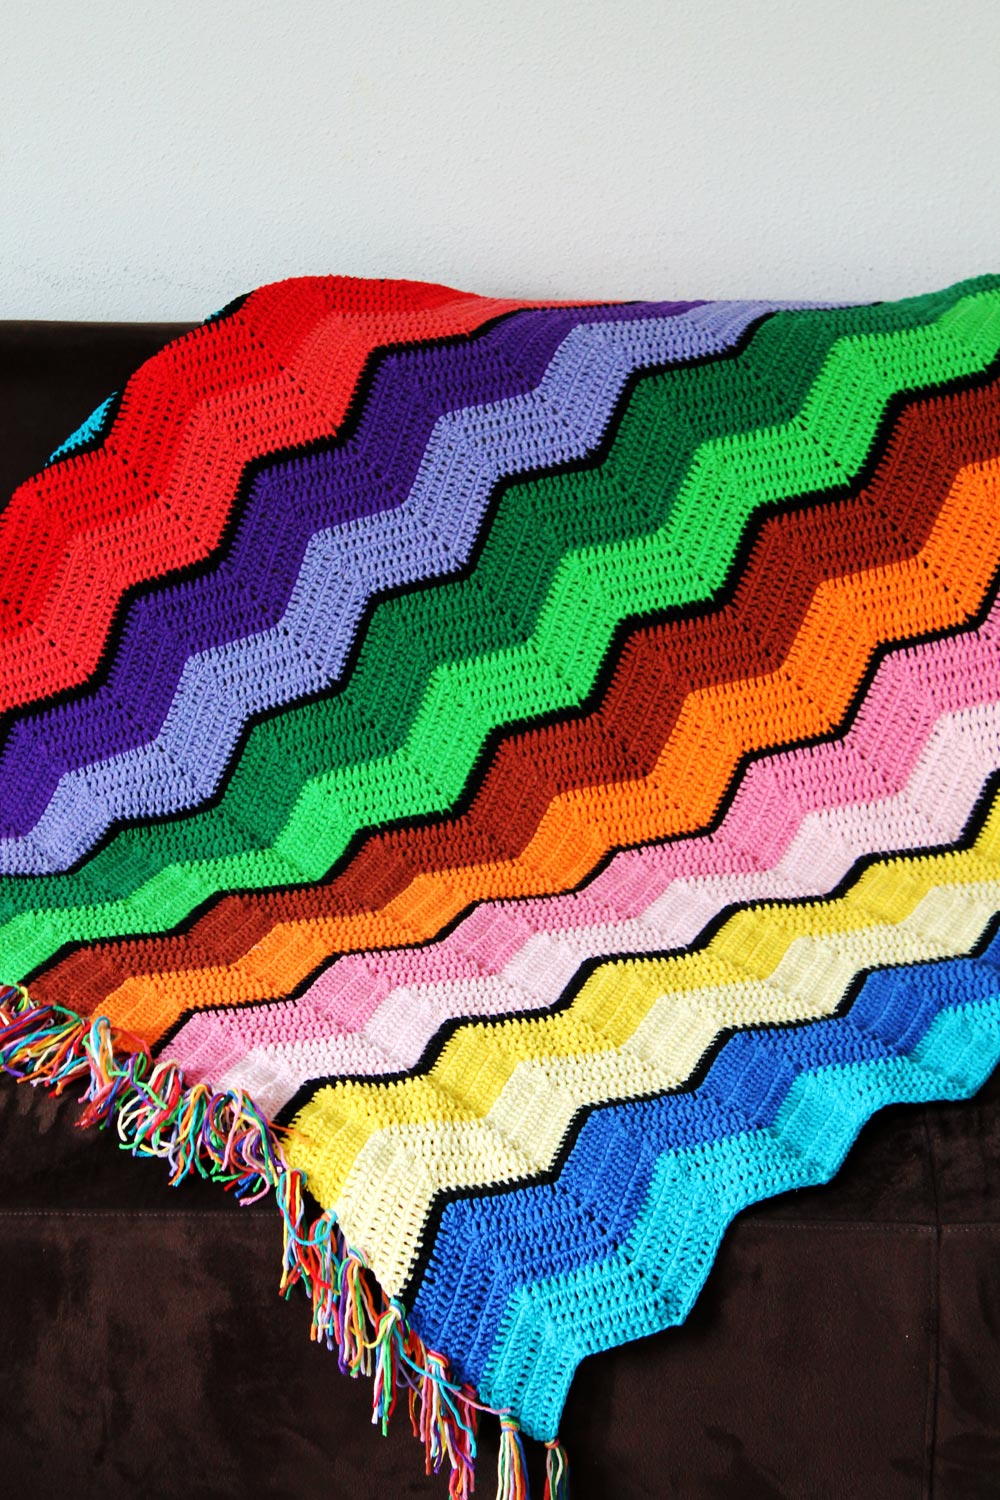 free printable crochet afghan patterns